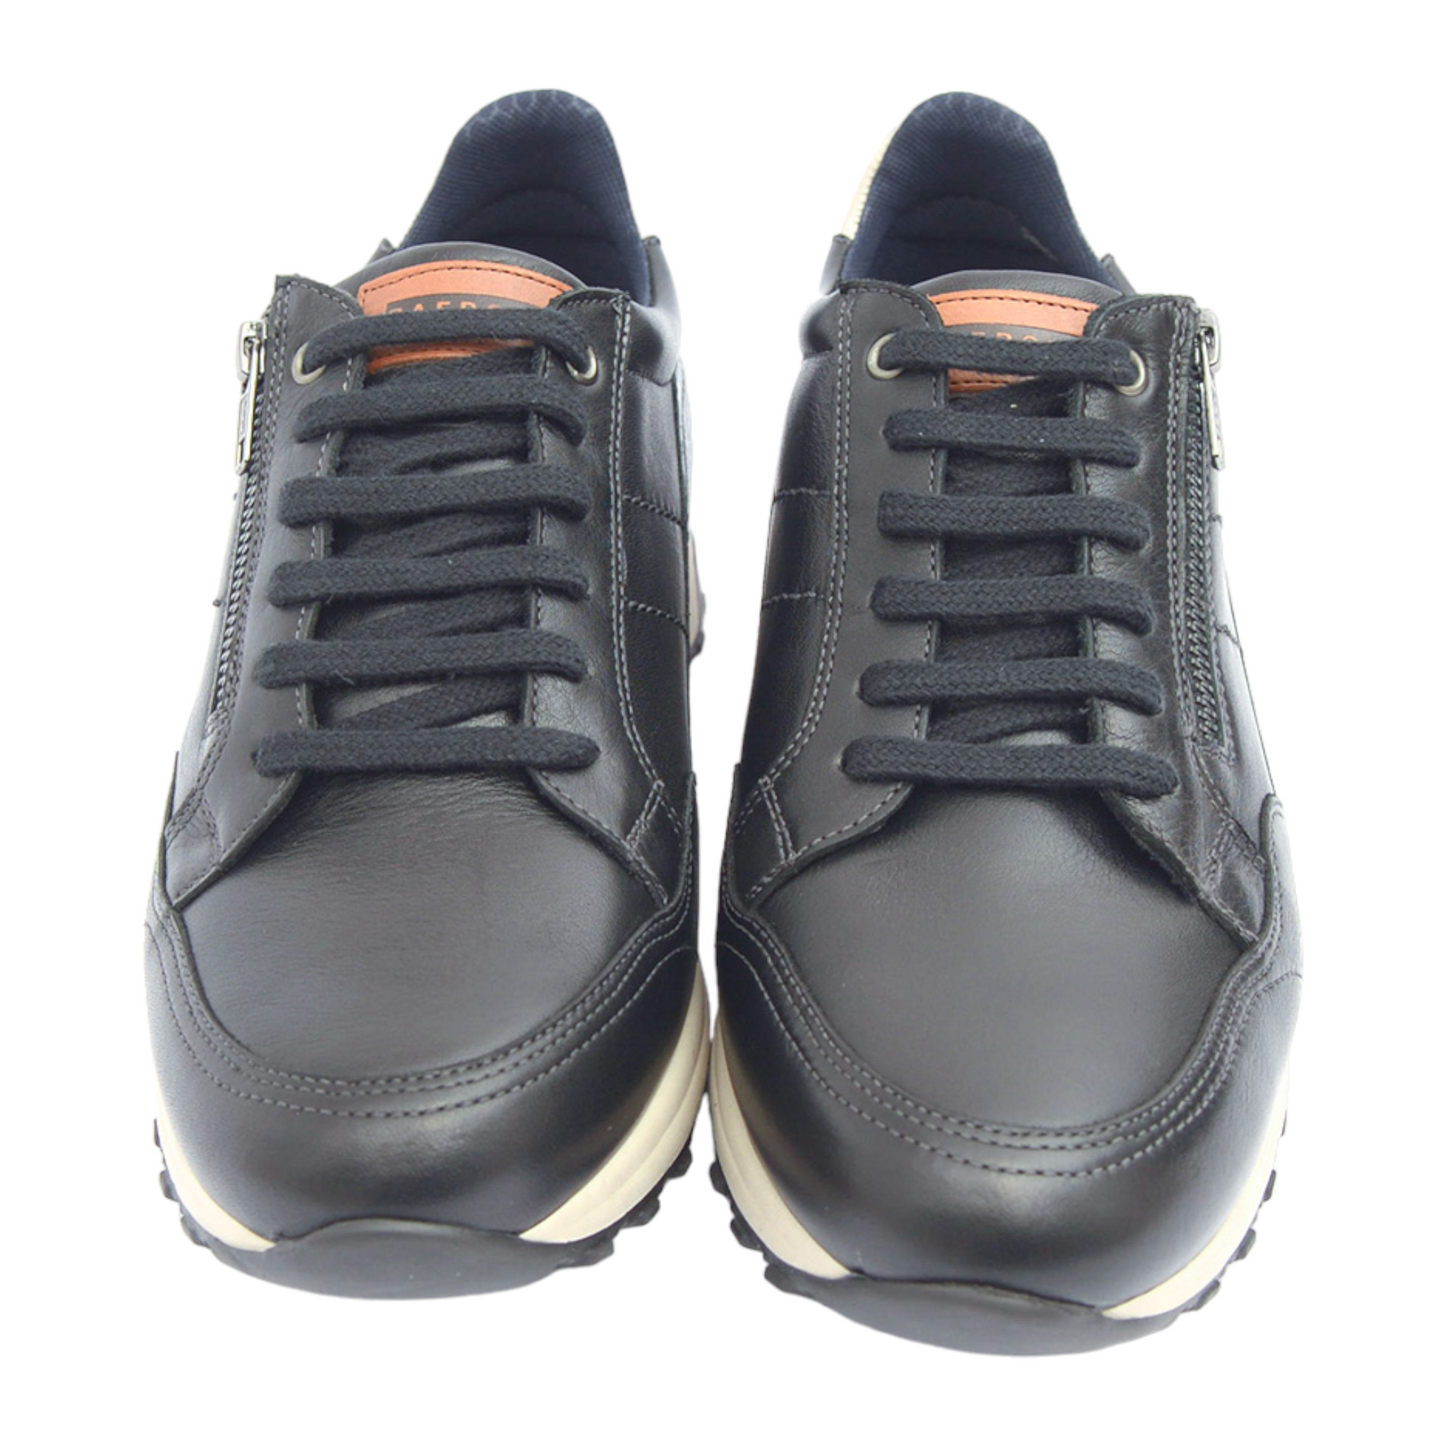 Sneakers Con Cordones Cremallera Color Negro 1300